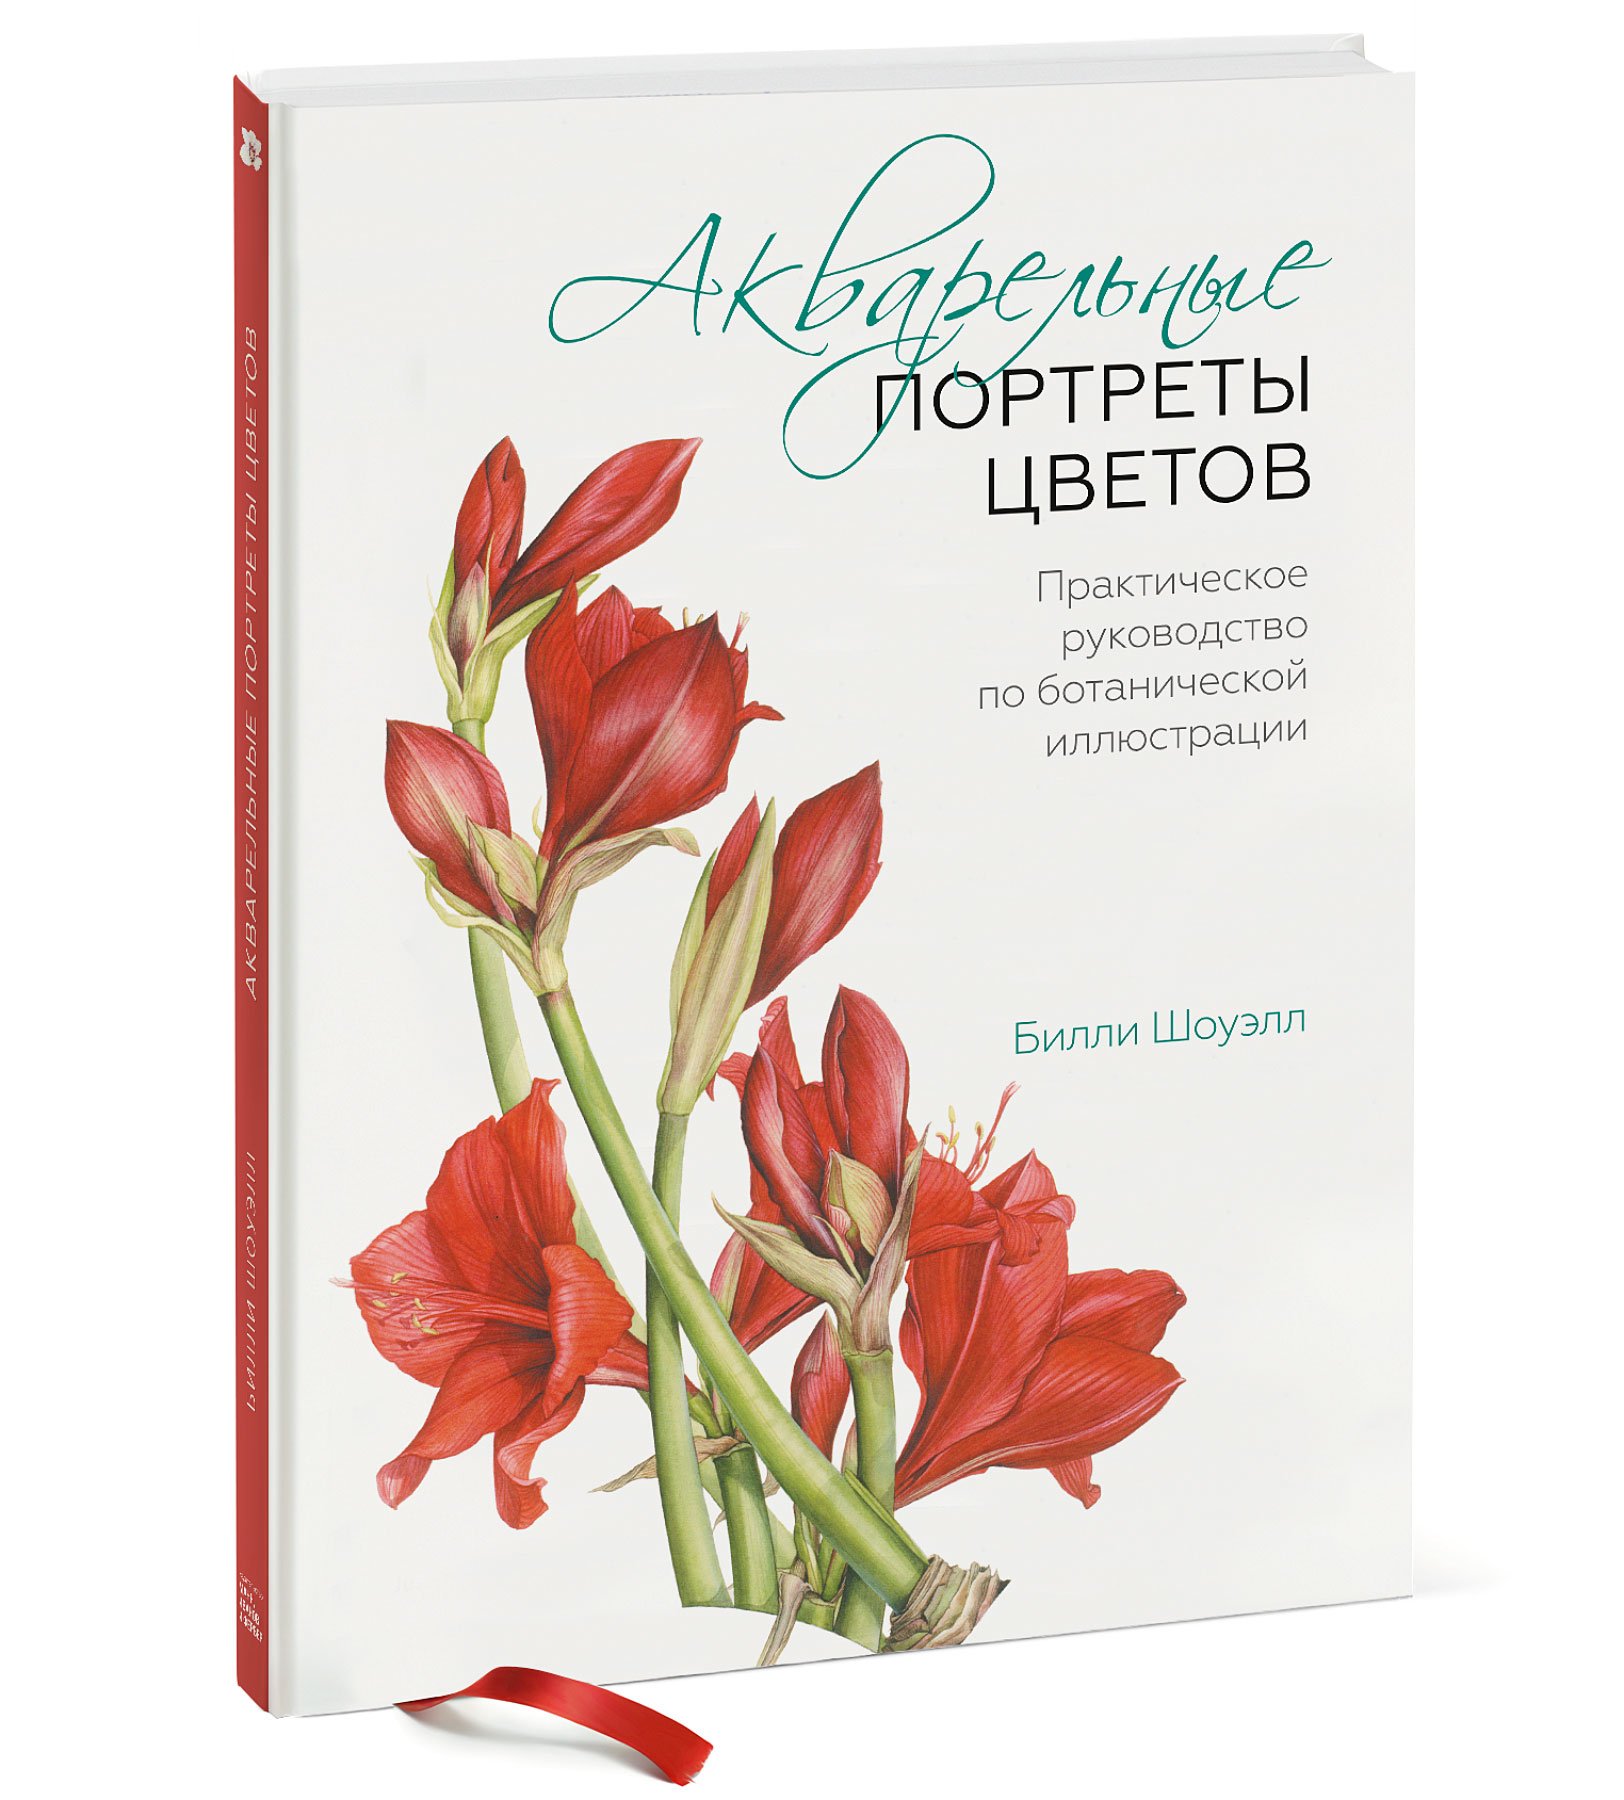 Zakazat.ru: Акварельные портреты цветов. Практическое руководство по ботанической иллюстрации. Шоуэлл Билли